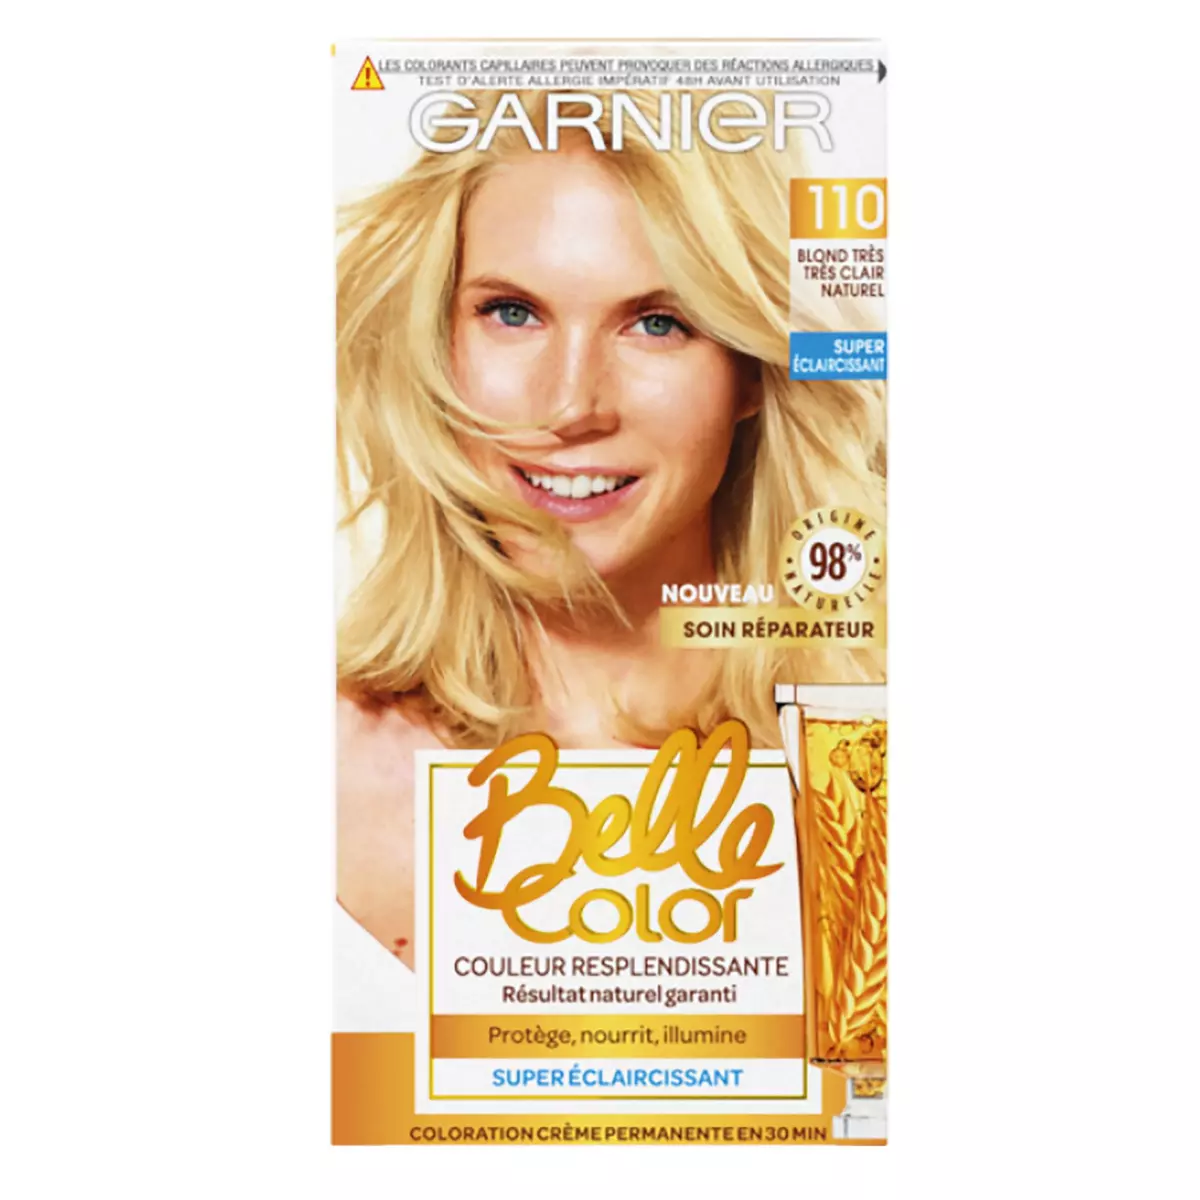 GARNIER Belle Color coloration permanente blond très clair naturel 110 1 kit